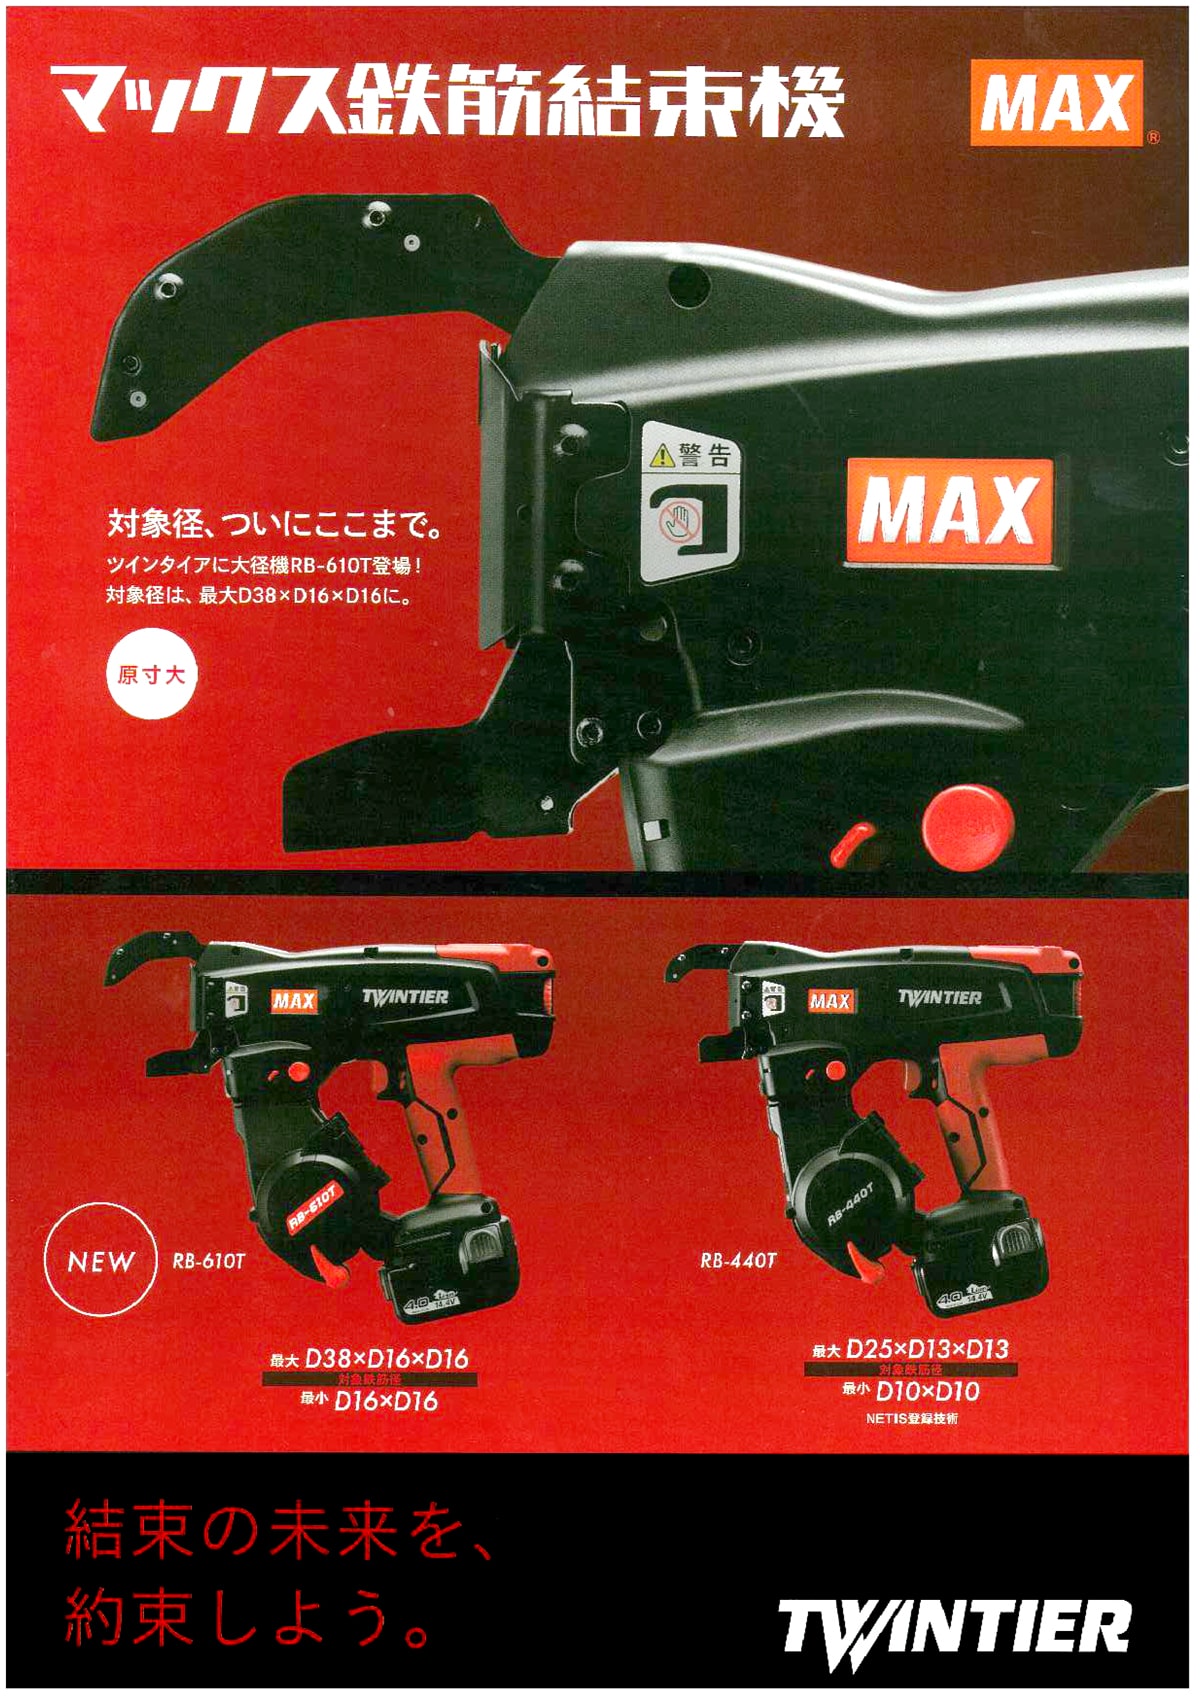 オリジナルブランド MAX 自動結束機 ツインタイヤ その他